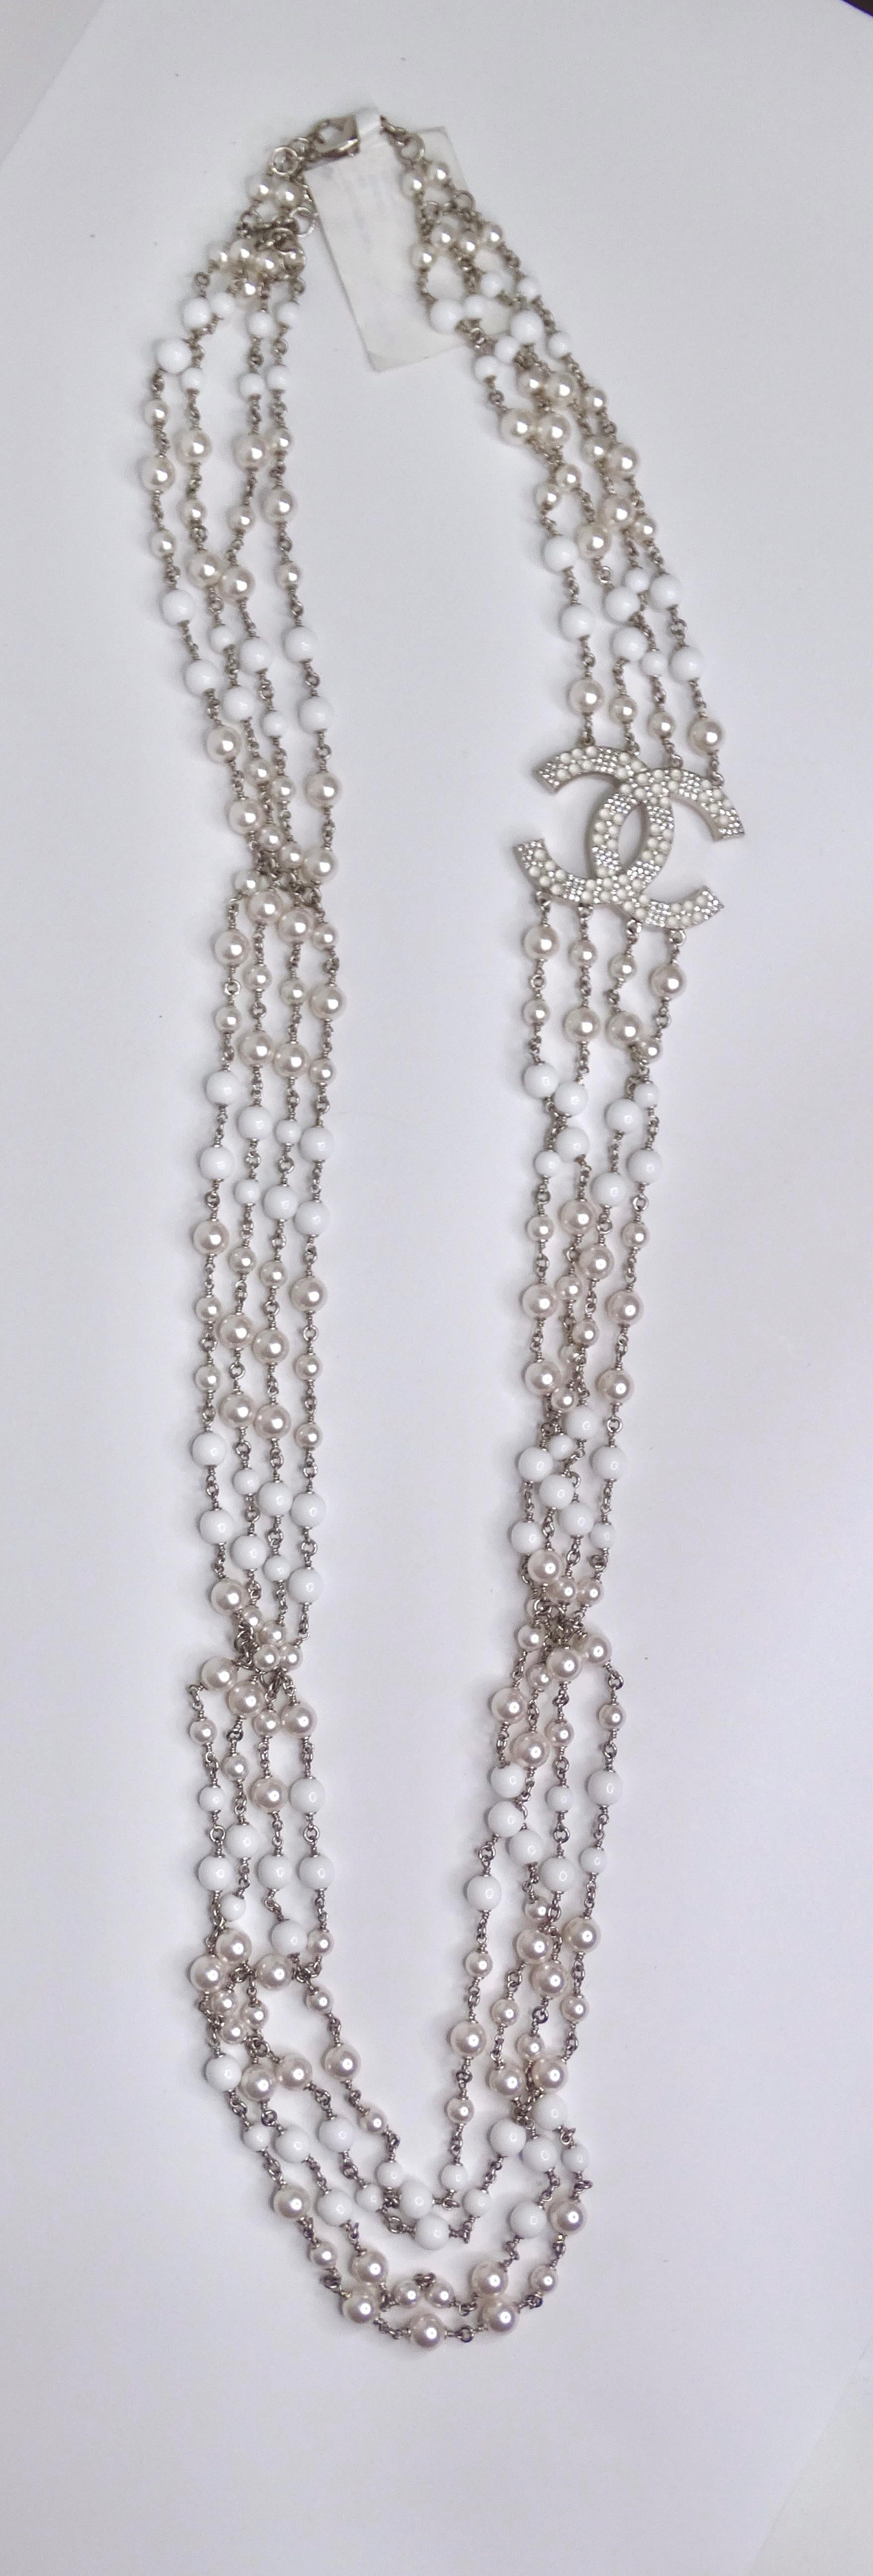 chanel multi strand pearl necklace